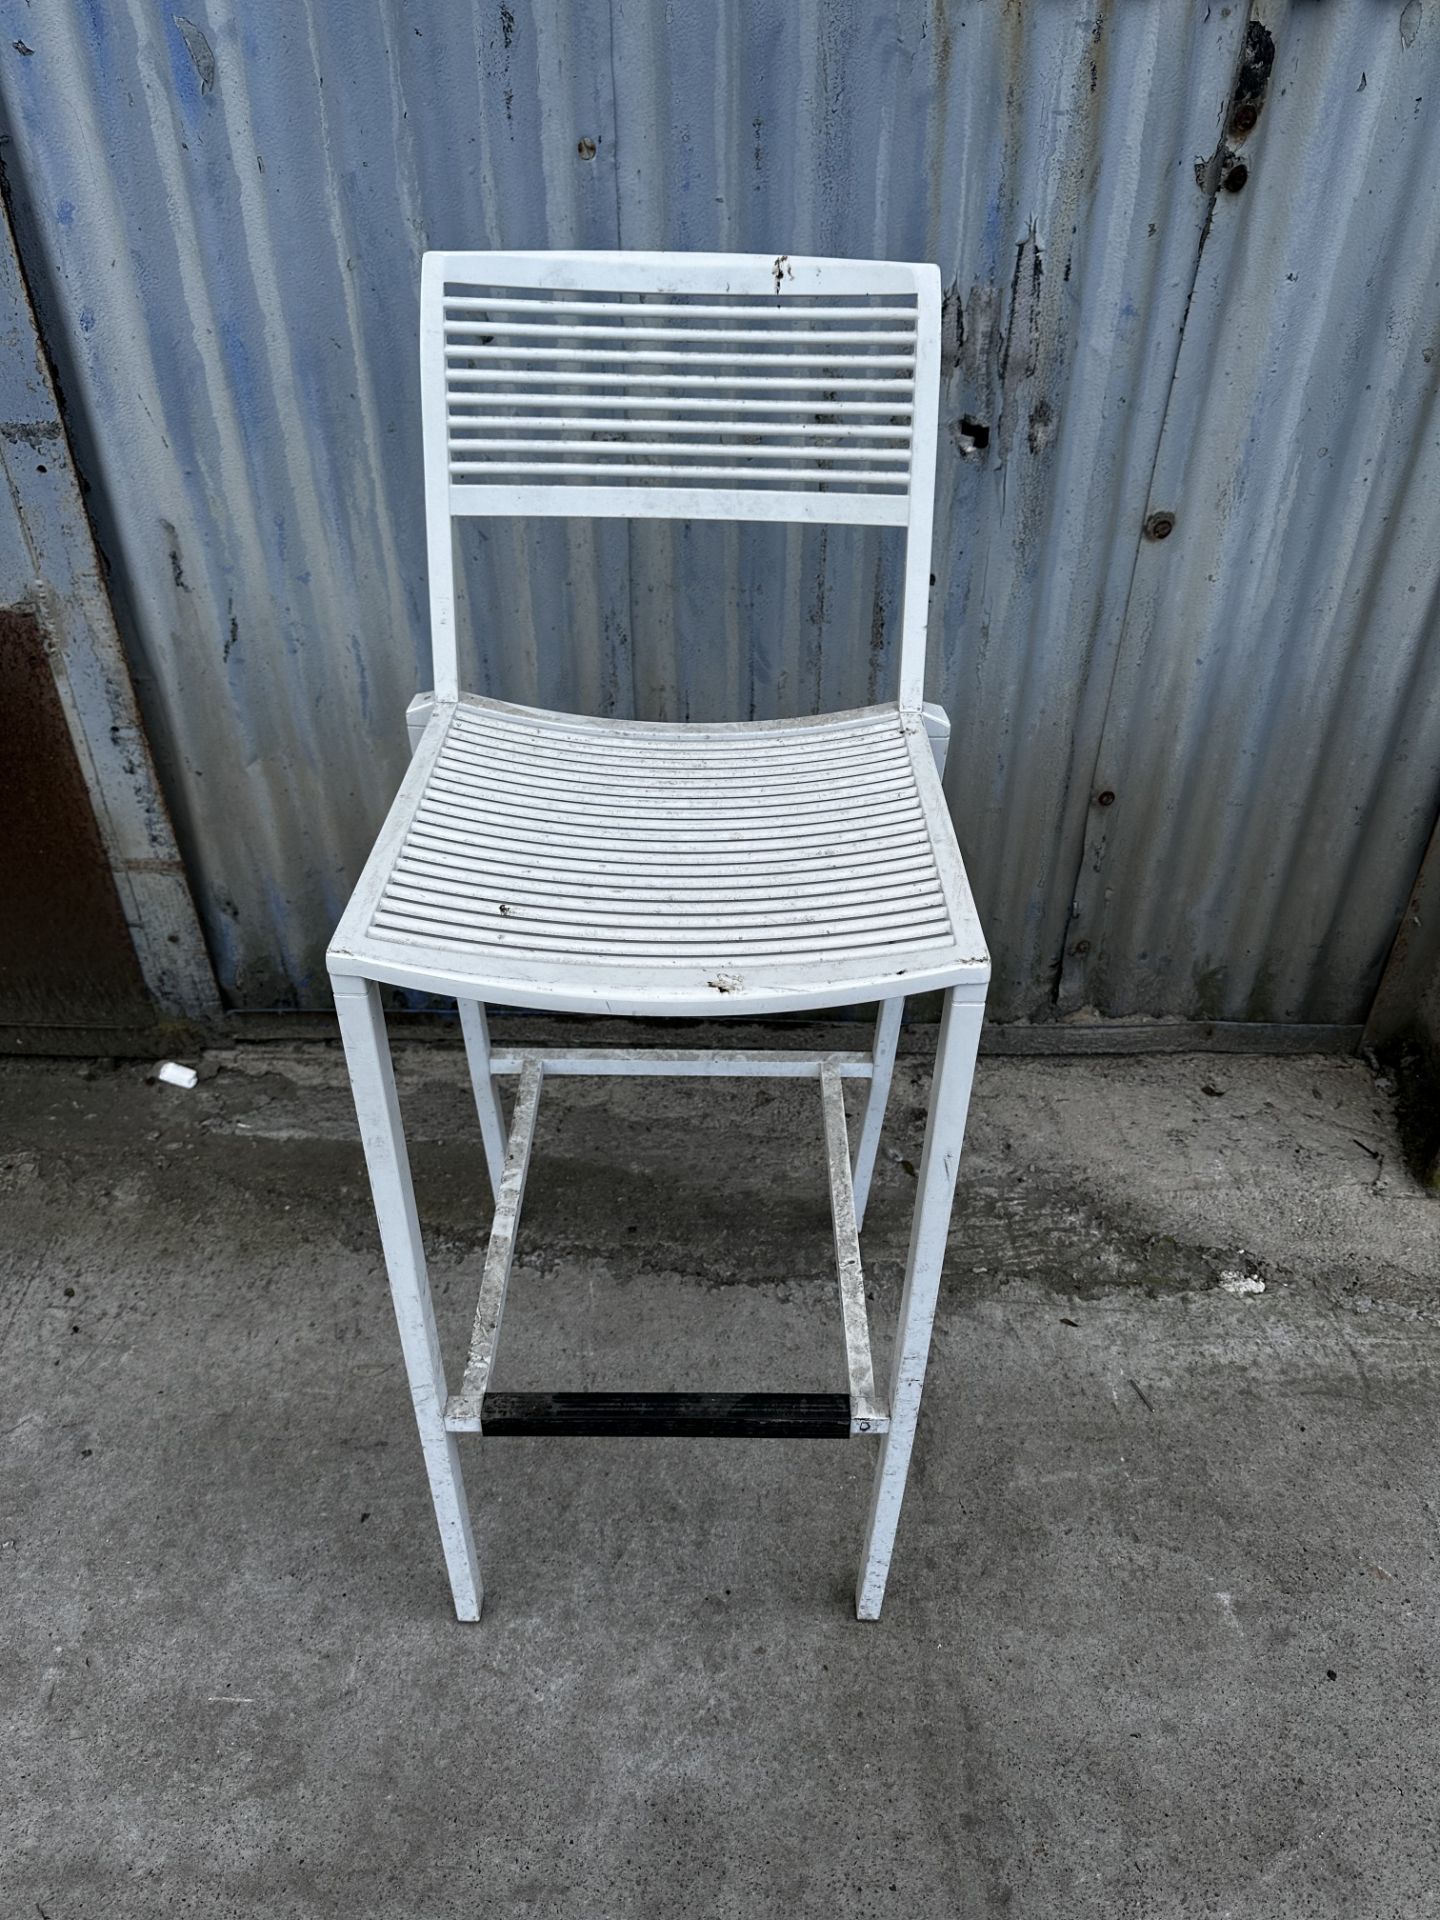 White Metal High Chair